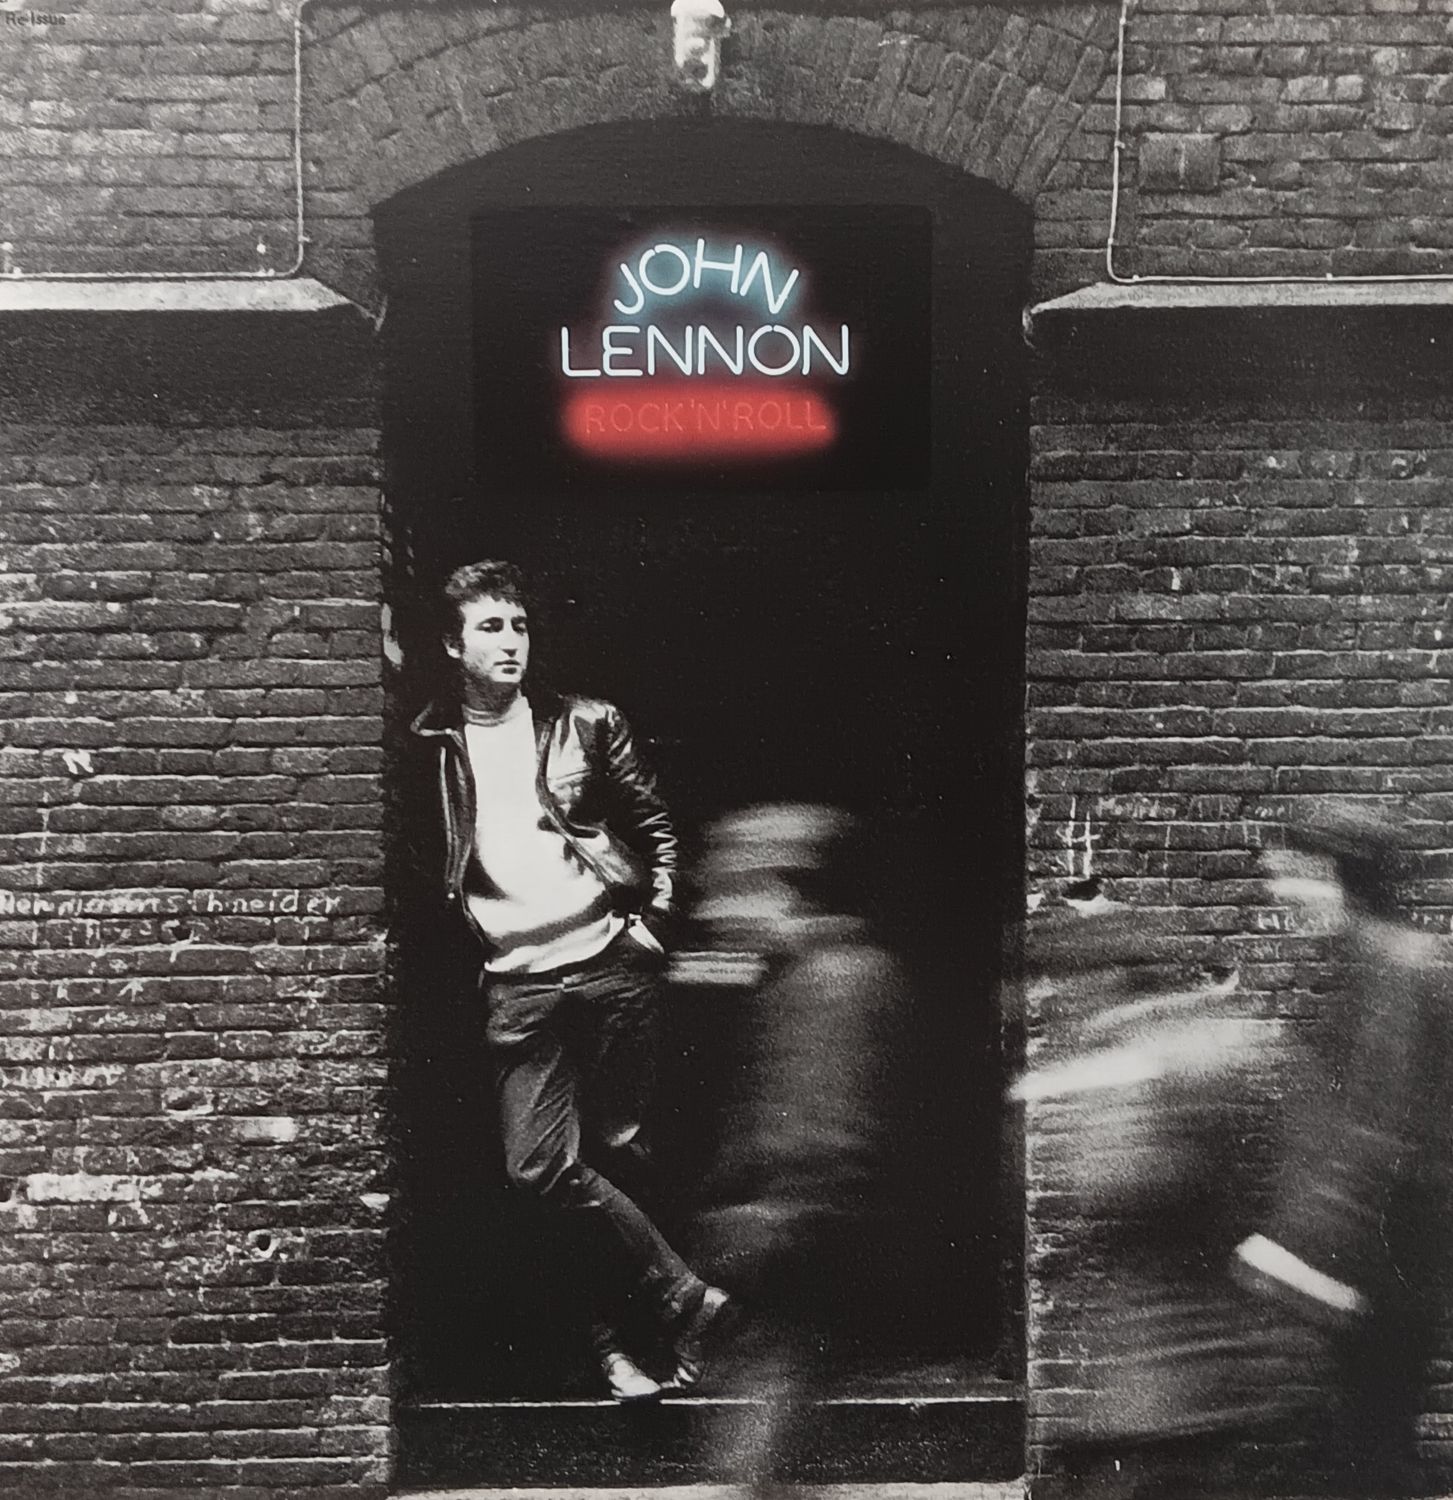 JOHN LENNON - Rock n roll